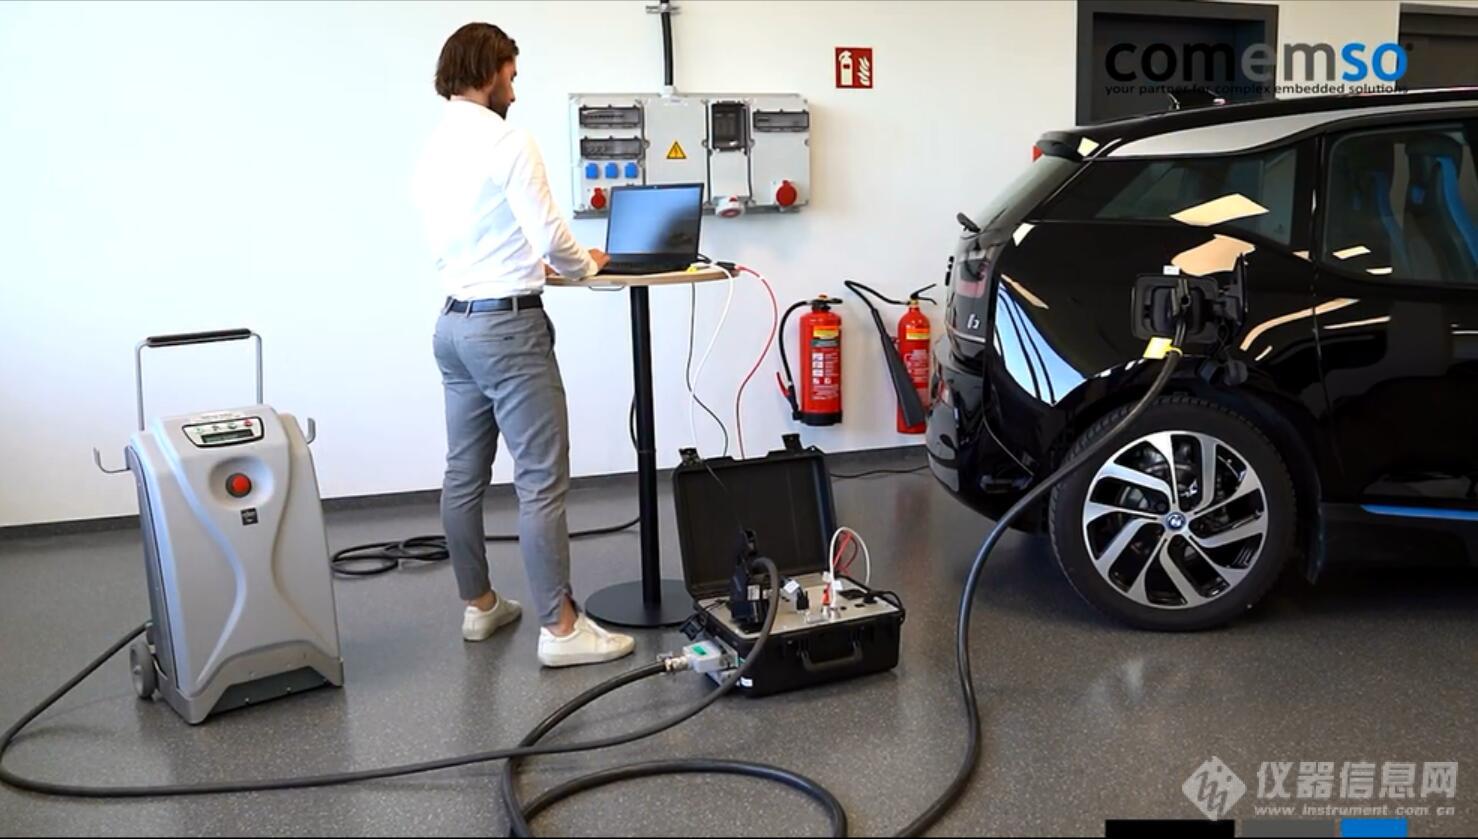 德国Comemso电动汽车与充电桩互操作性测试中间人模式